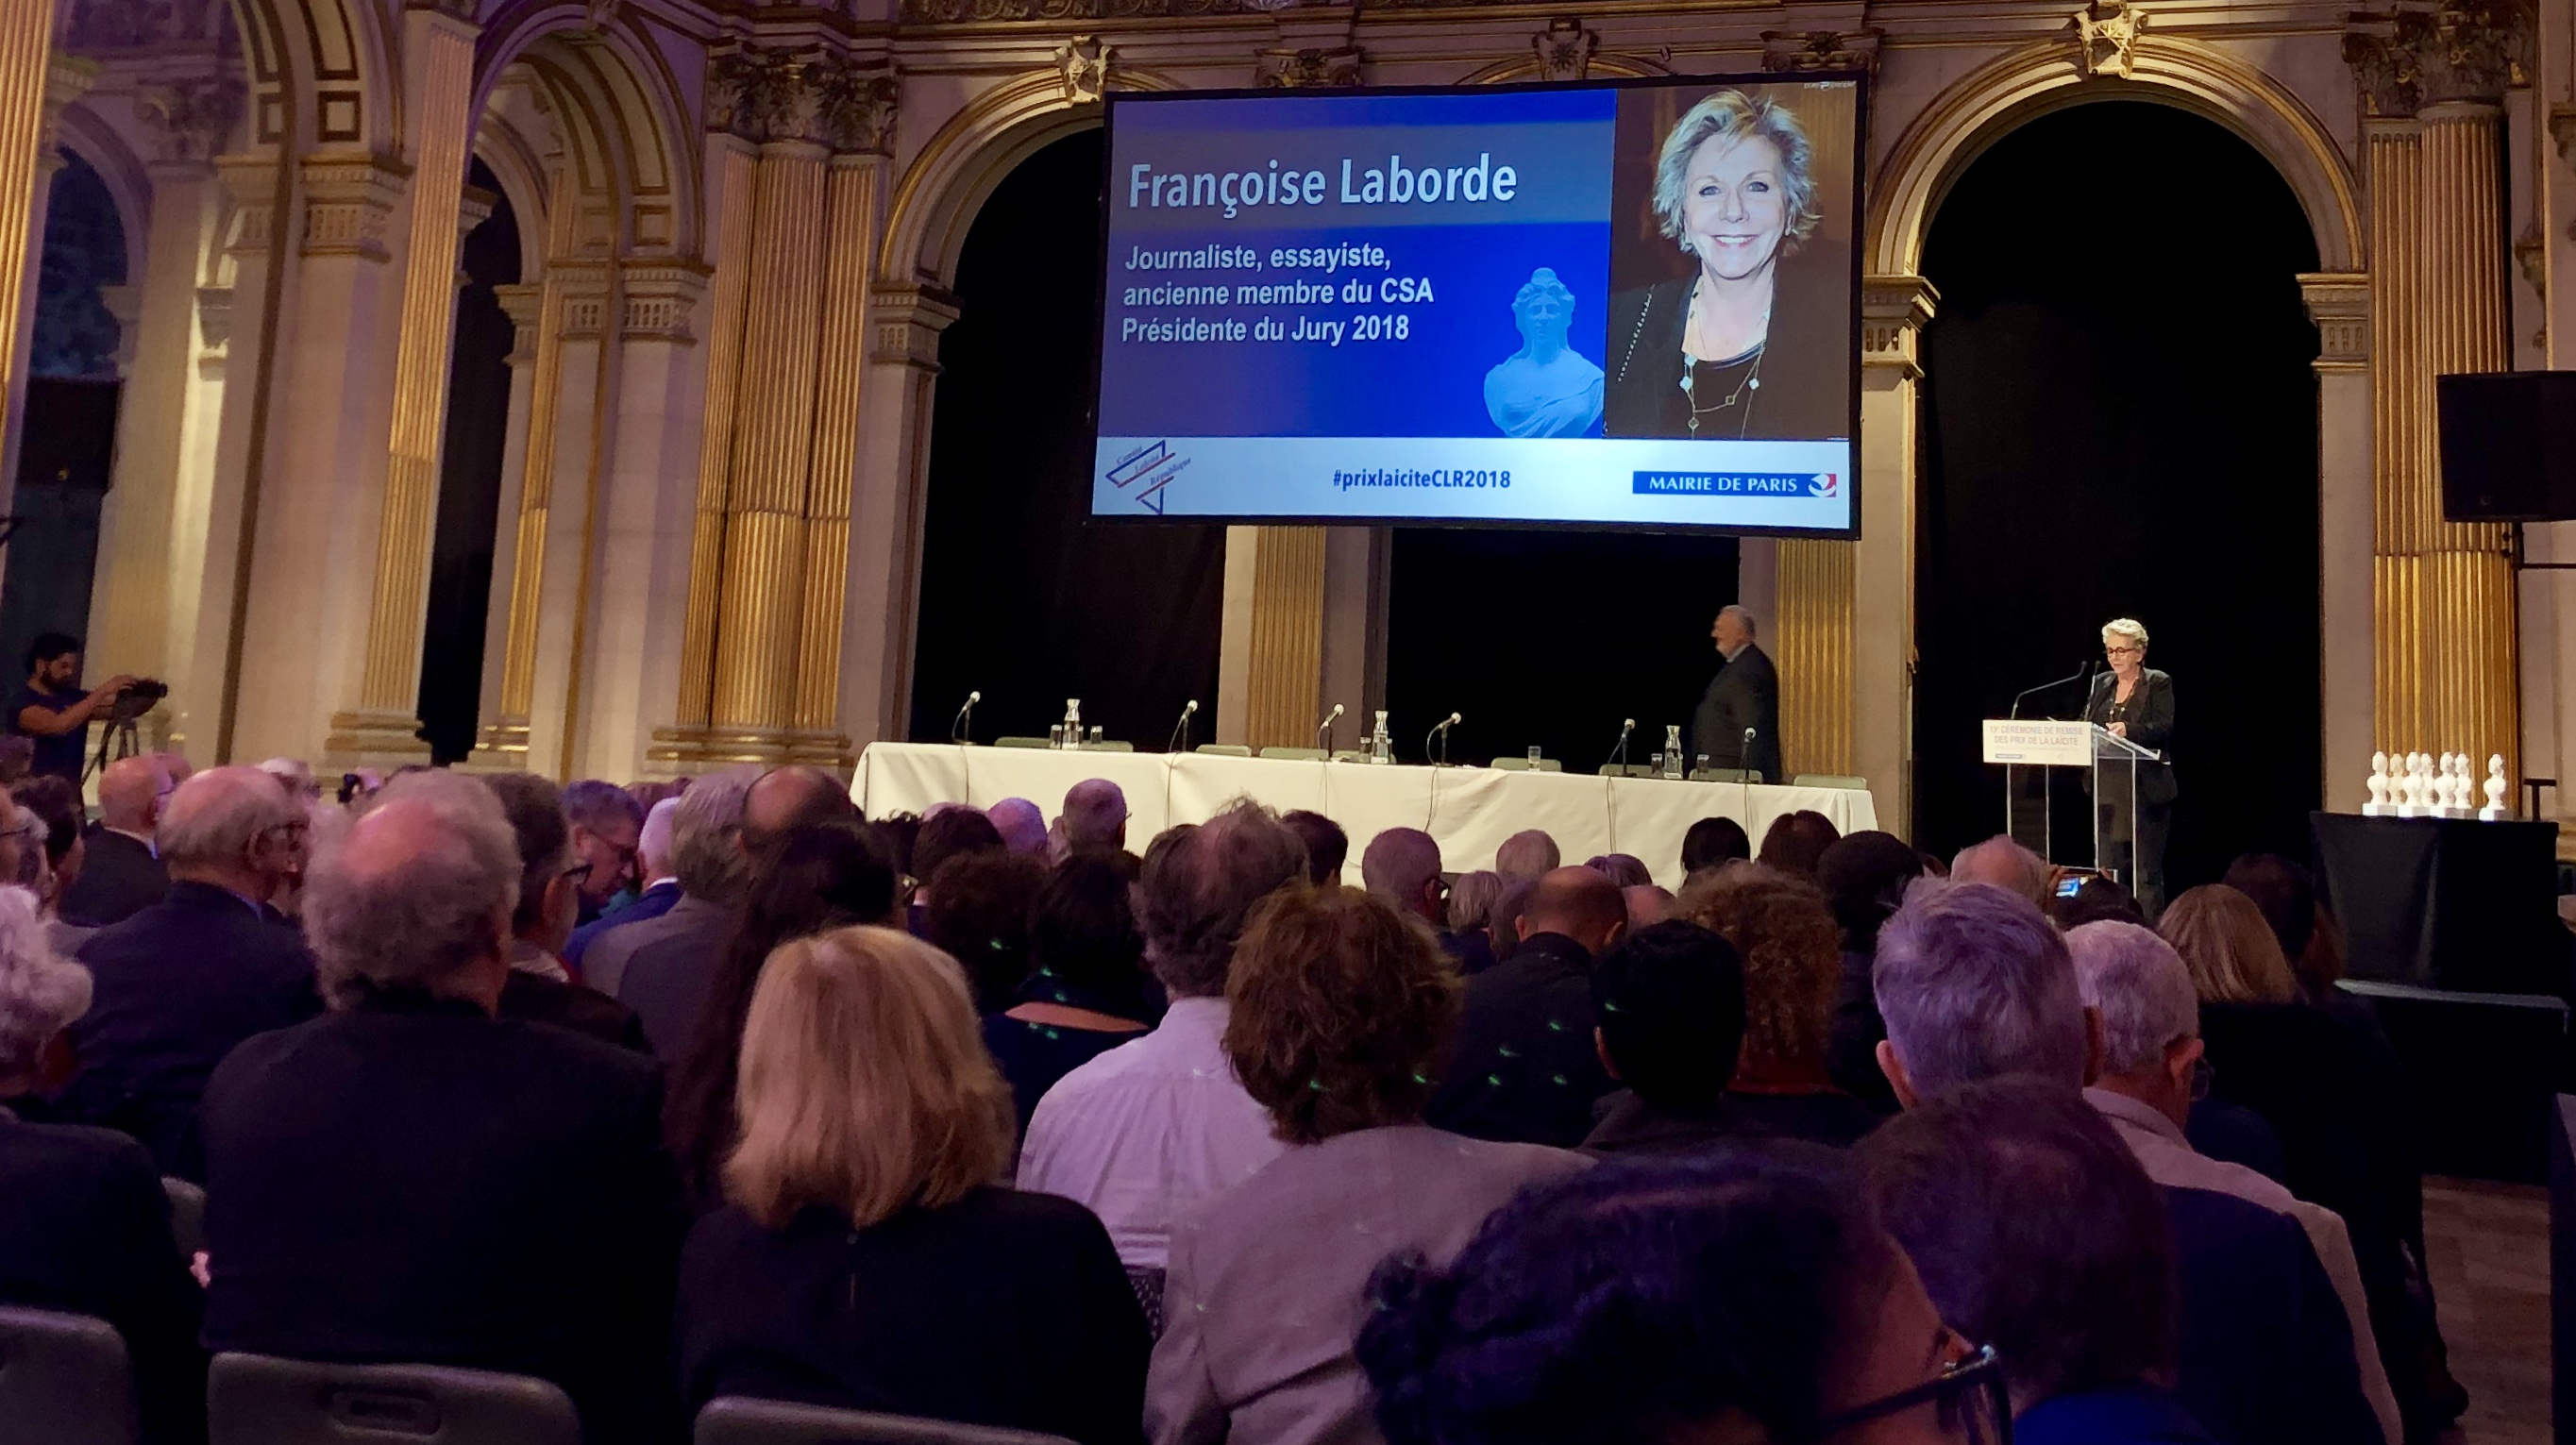 Françoise Laborde, journaliste et présidente du jury, déclare la cérémonie de remise du Prix laïcité 2018, ouverte.